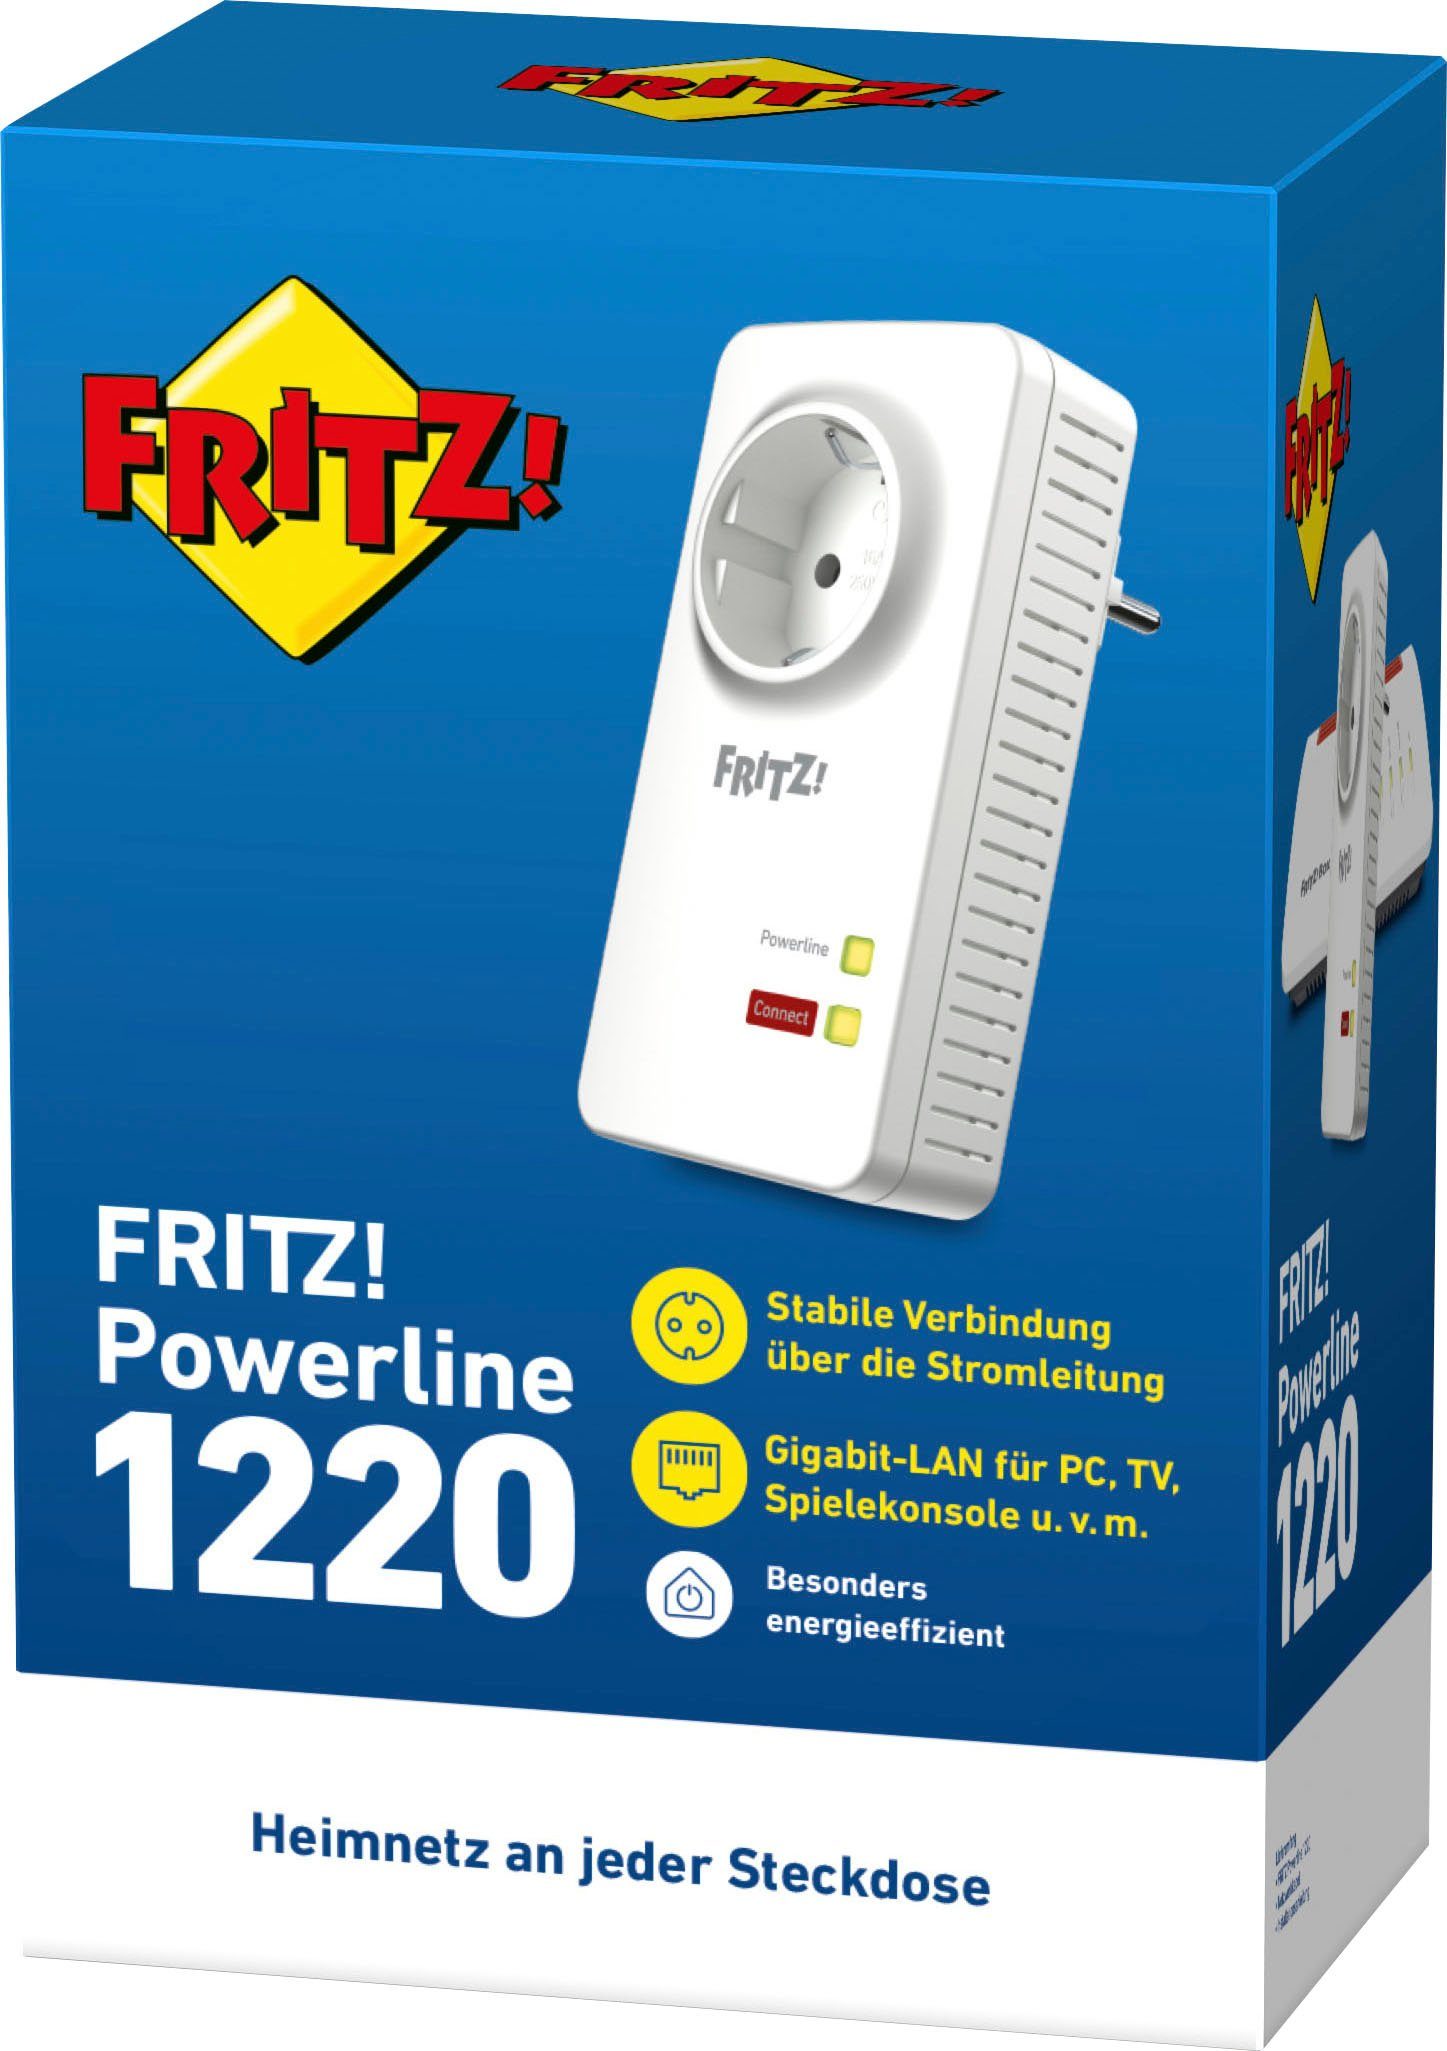 1220 LAN-Router FRITZ!Powerline AVM